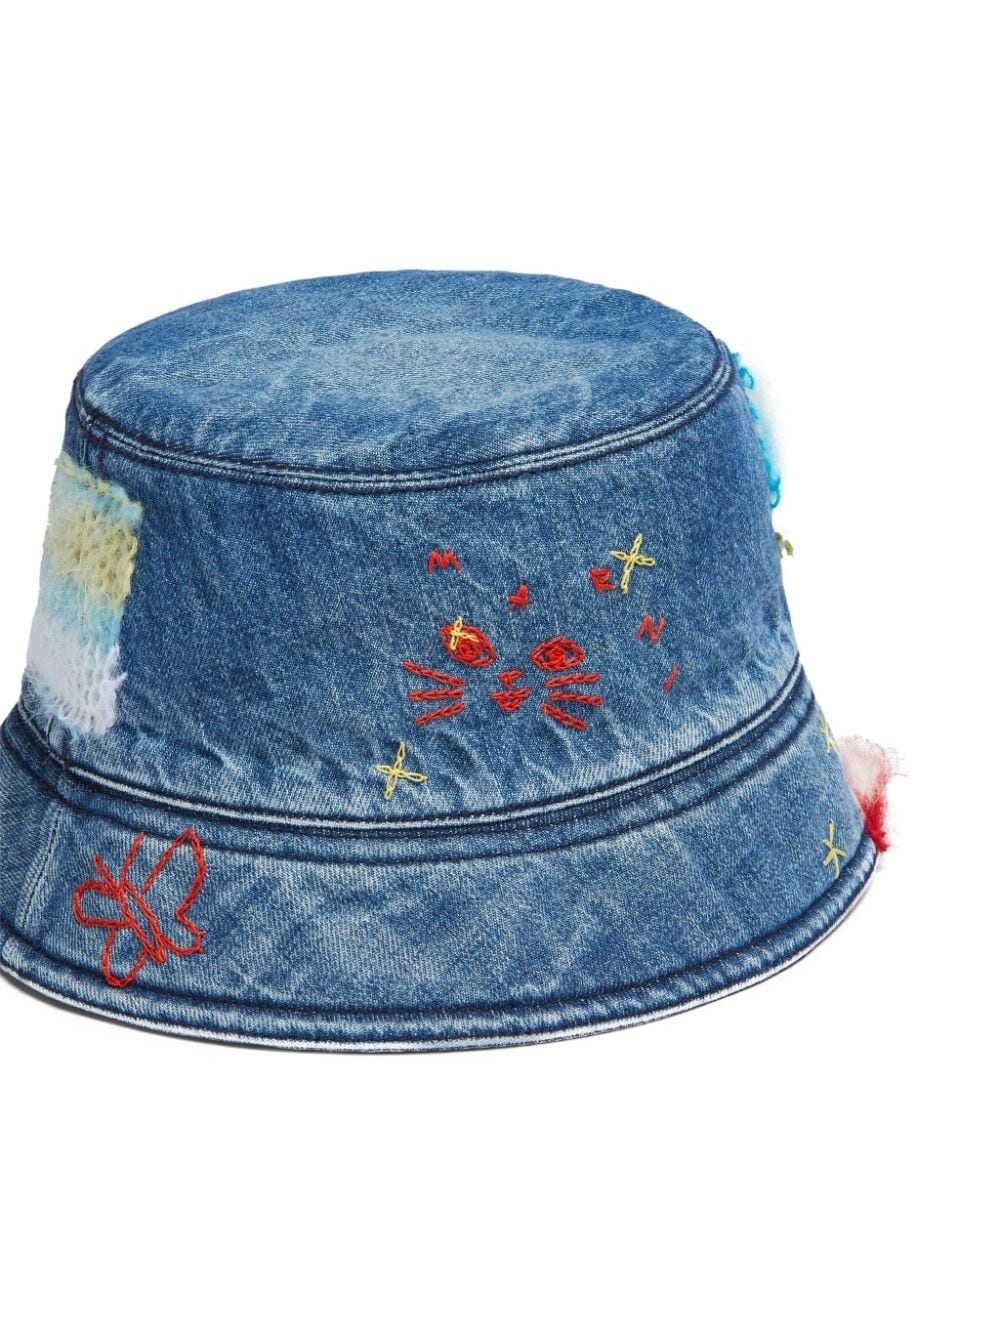 star-embroidered denim bucket hat - 3